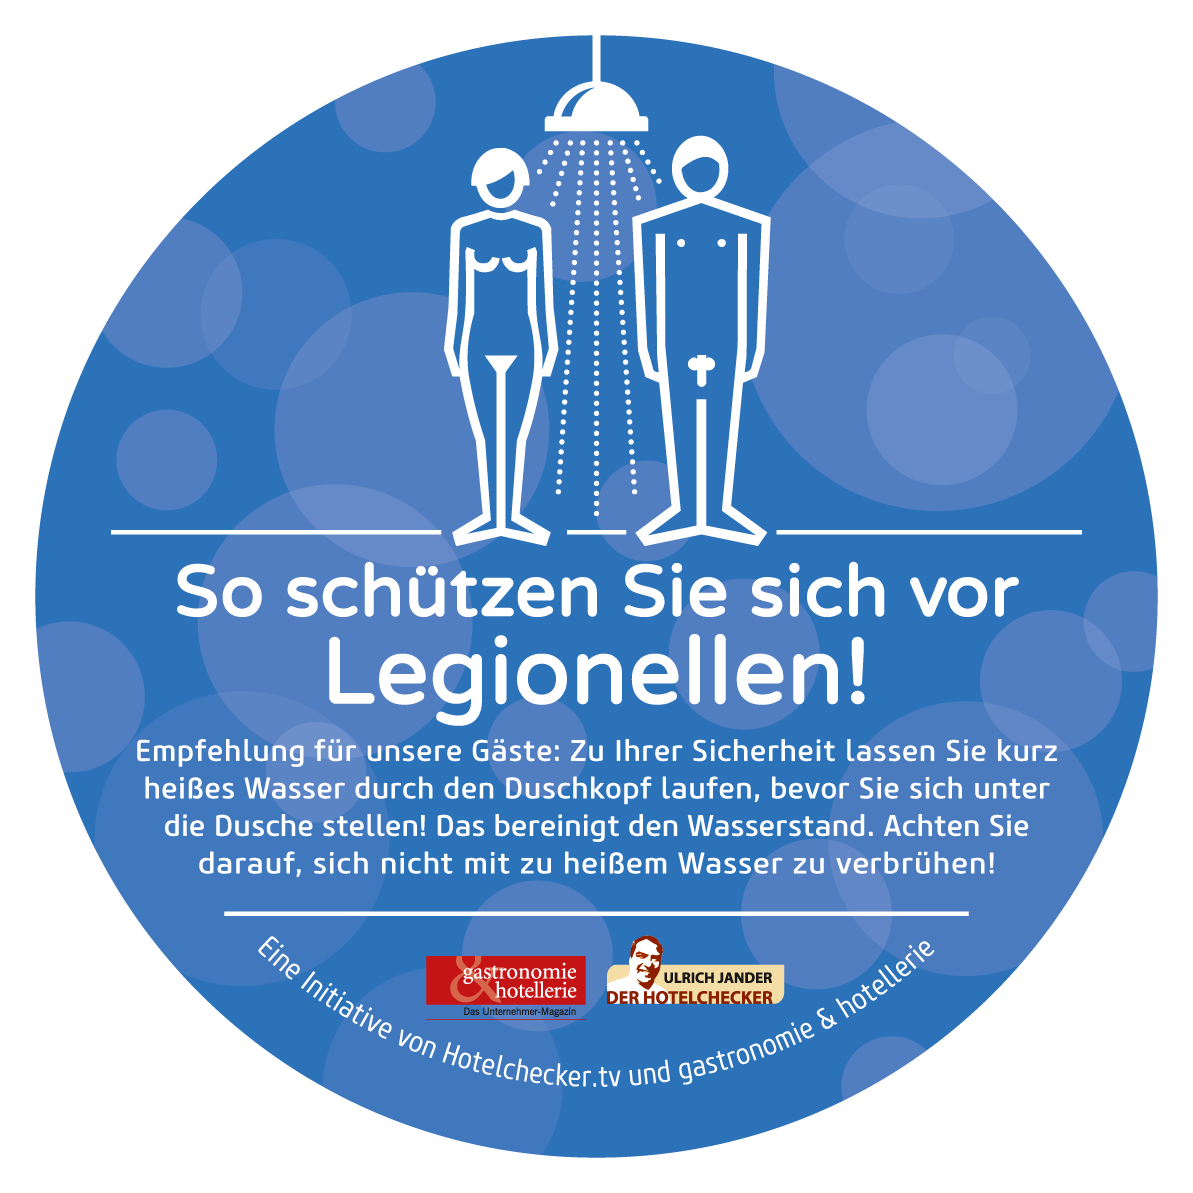 Schützen Sie Ihre Gäste vor gefährlichen Legionellen im Trinkwasser - Grafik: HUSS-MEDIEN/Arne Belau